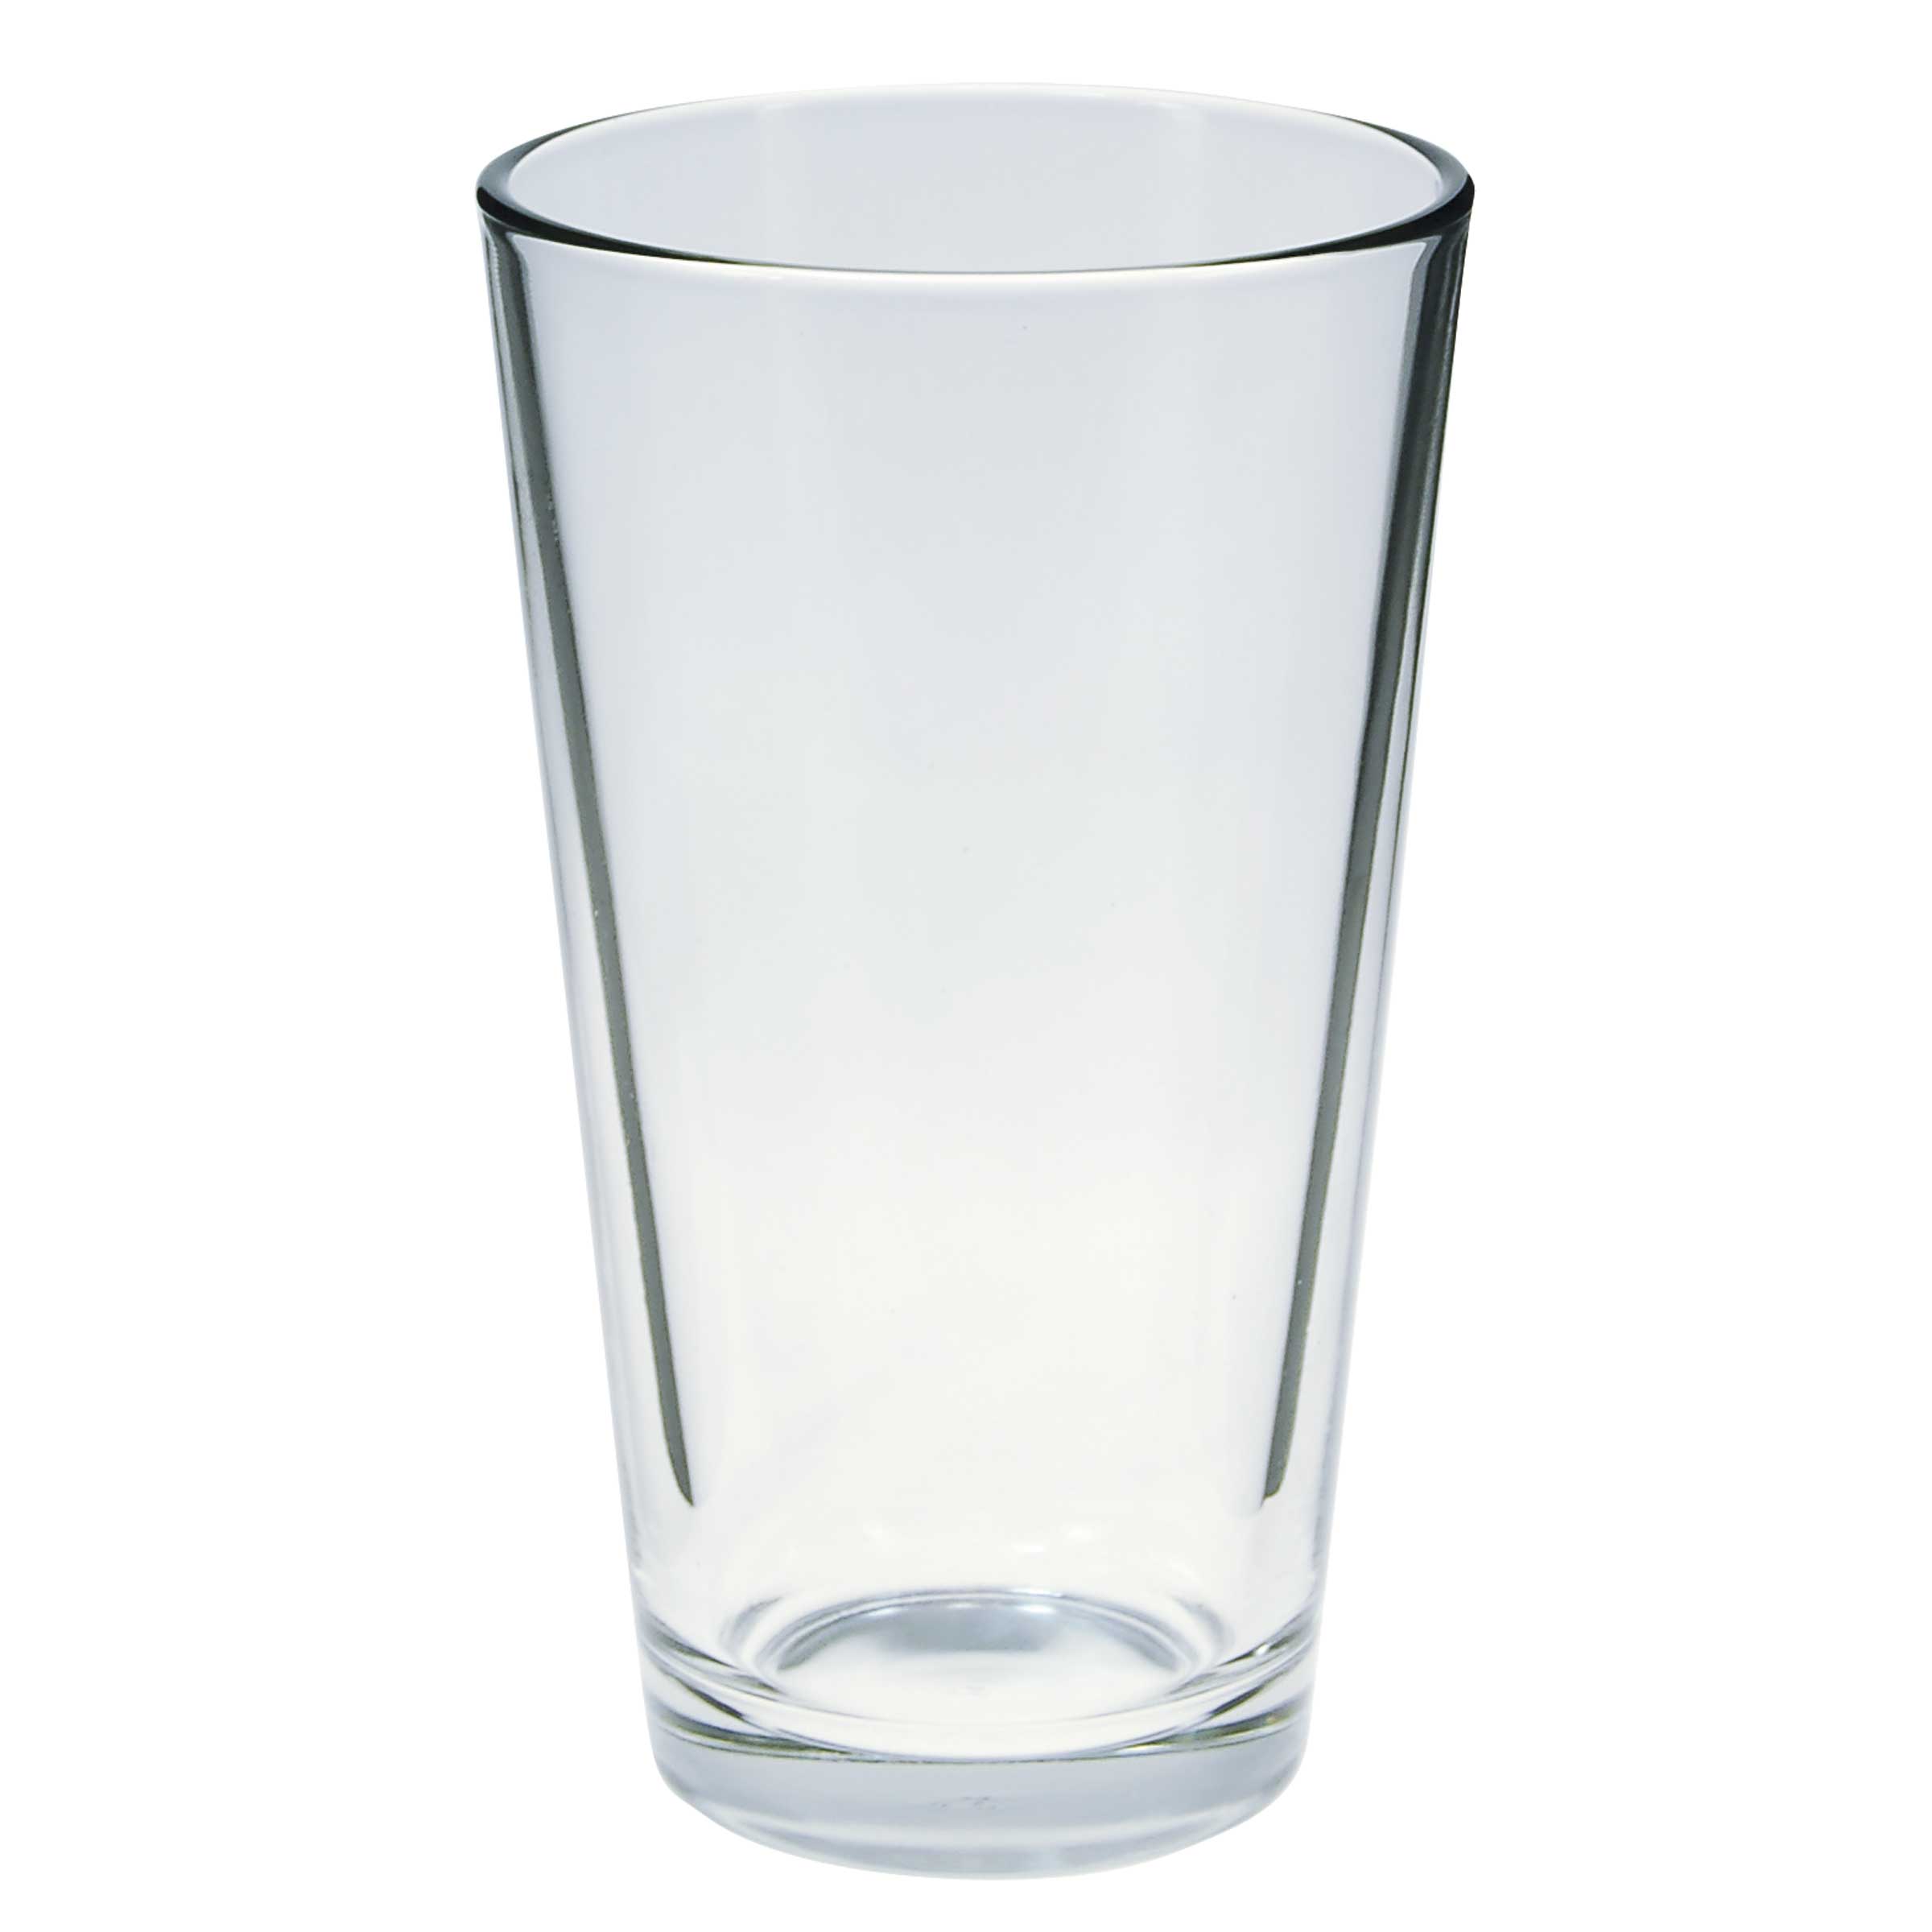 Pint Glass - Beer glasses | Beer Bones Marketing & Branding [CLOSED]